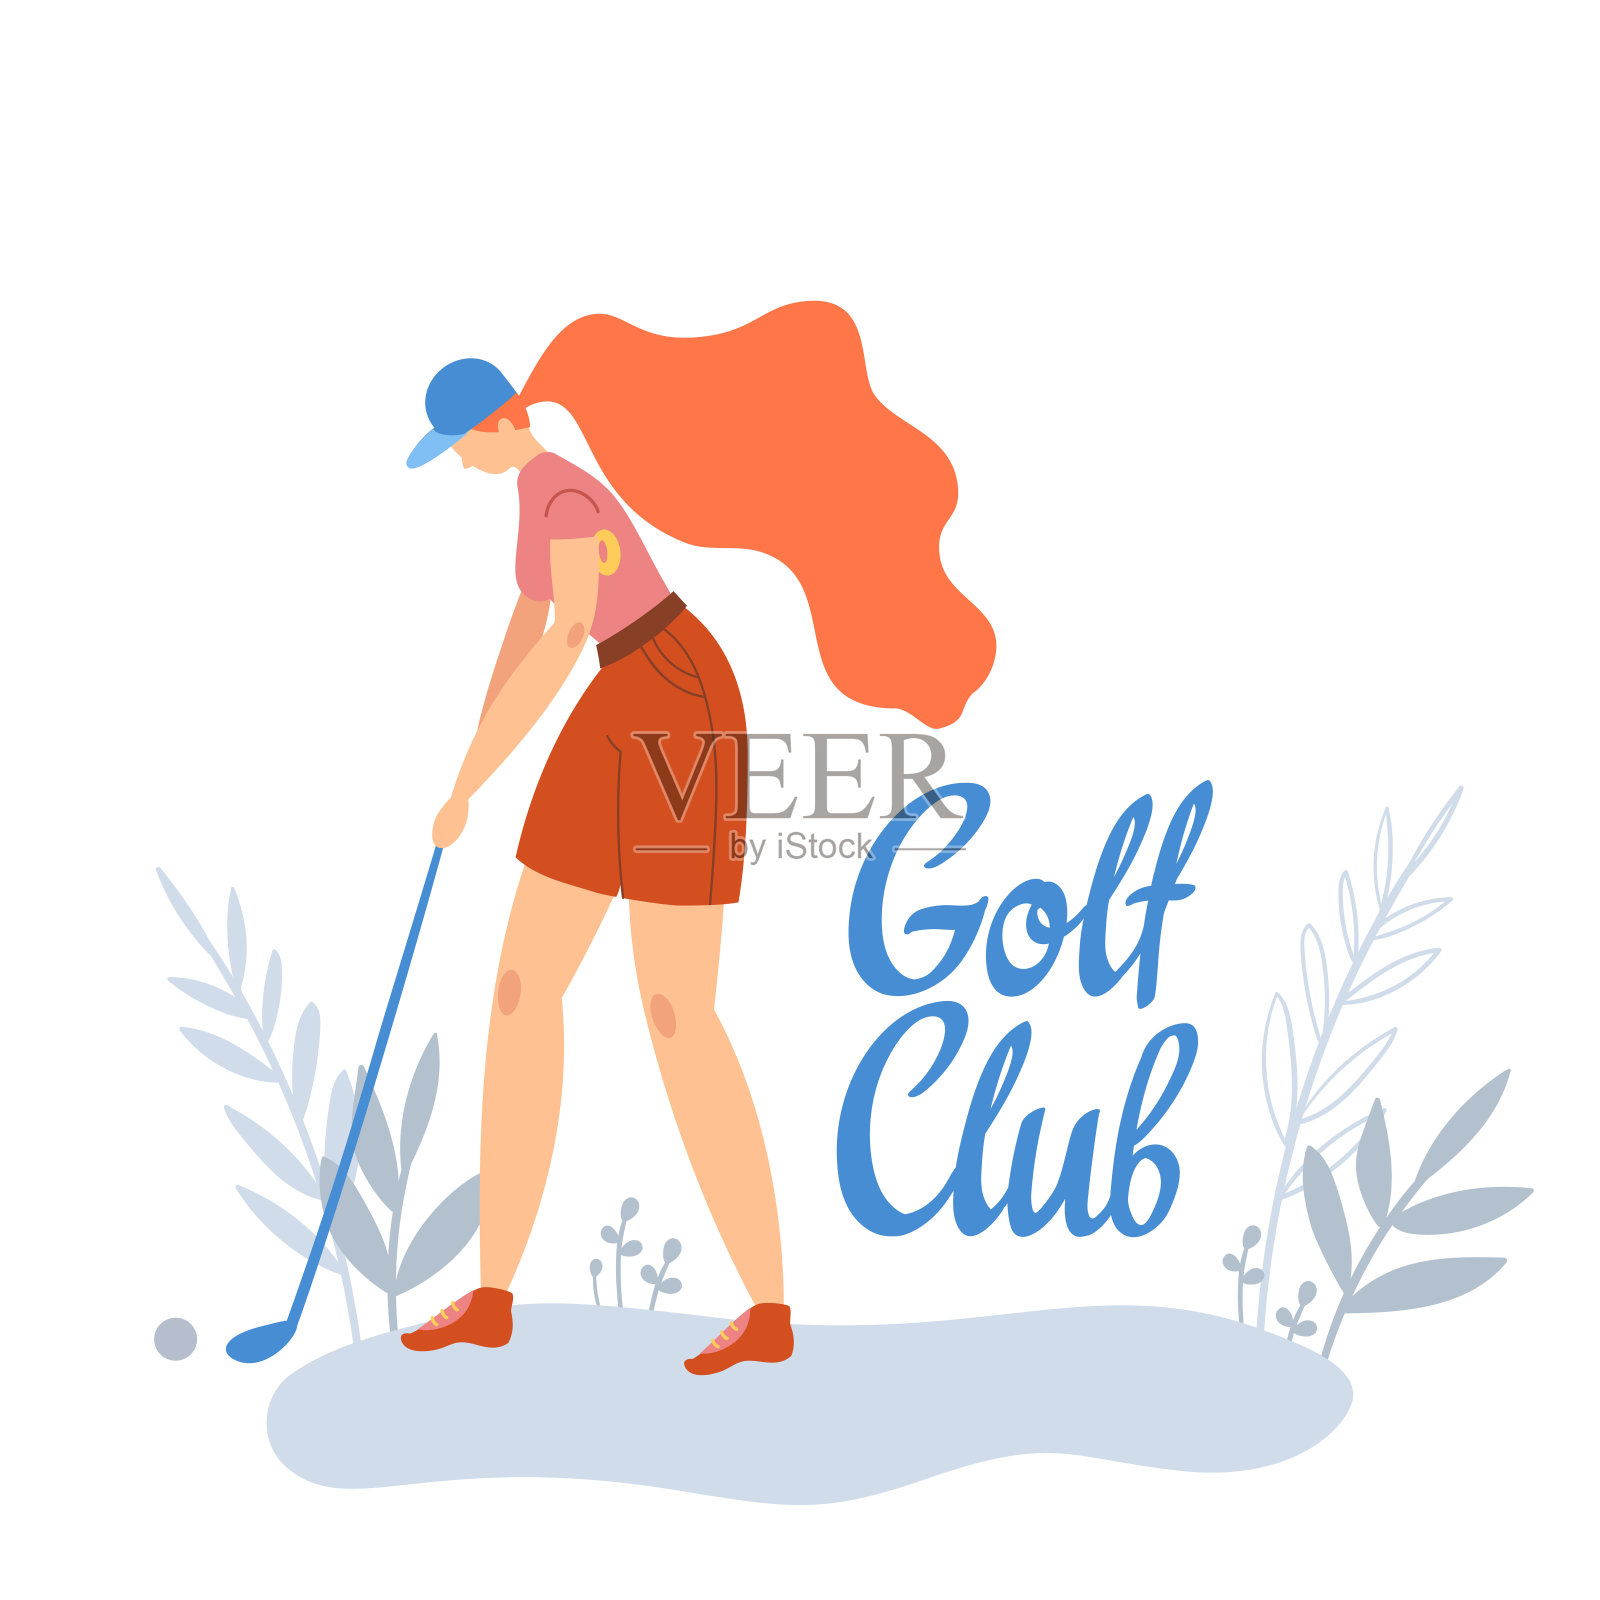 女高尔夫球手在高尔夫球场上用球杆击球。矢量平面手绘插图。打高尔夫球的女运动员。女孩在运动。带有文字空间的t恤印花设计。卡通人物。插画图片素材